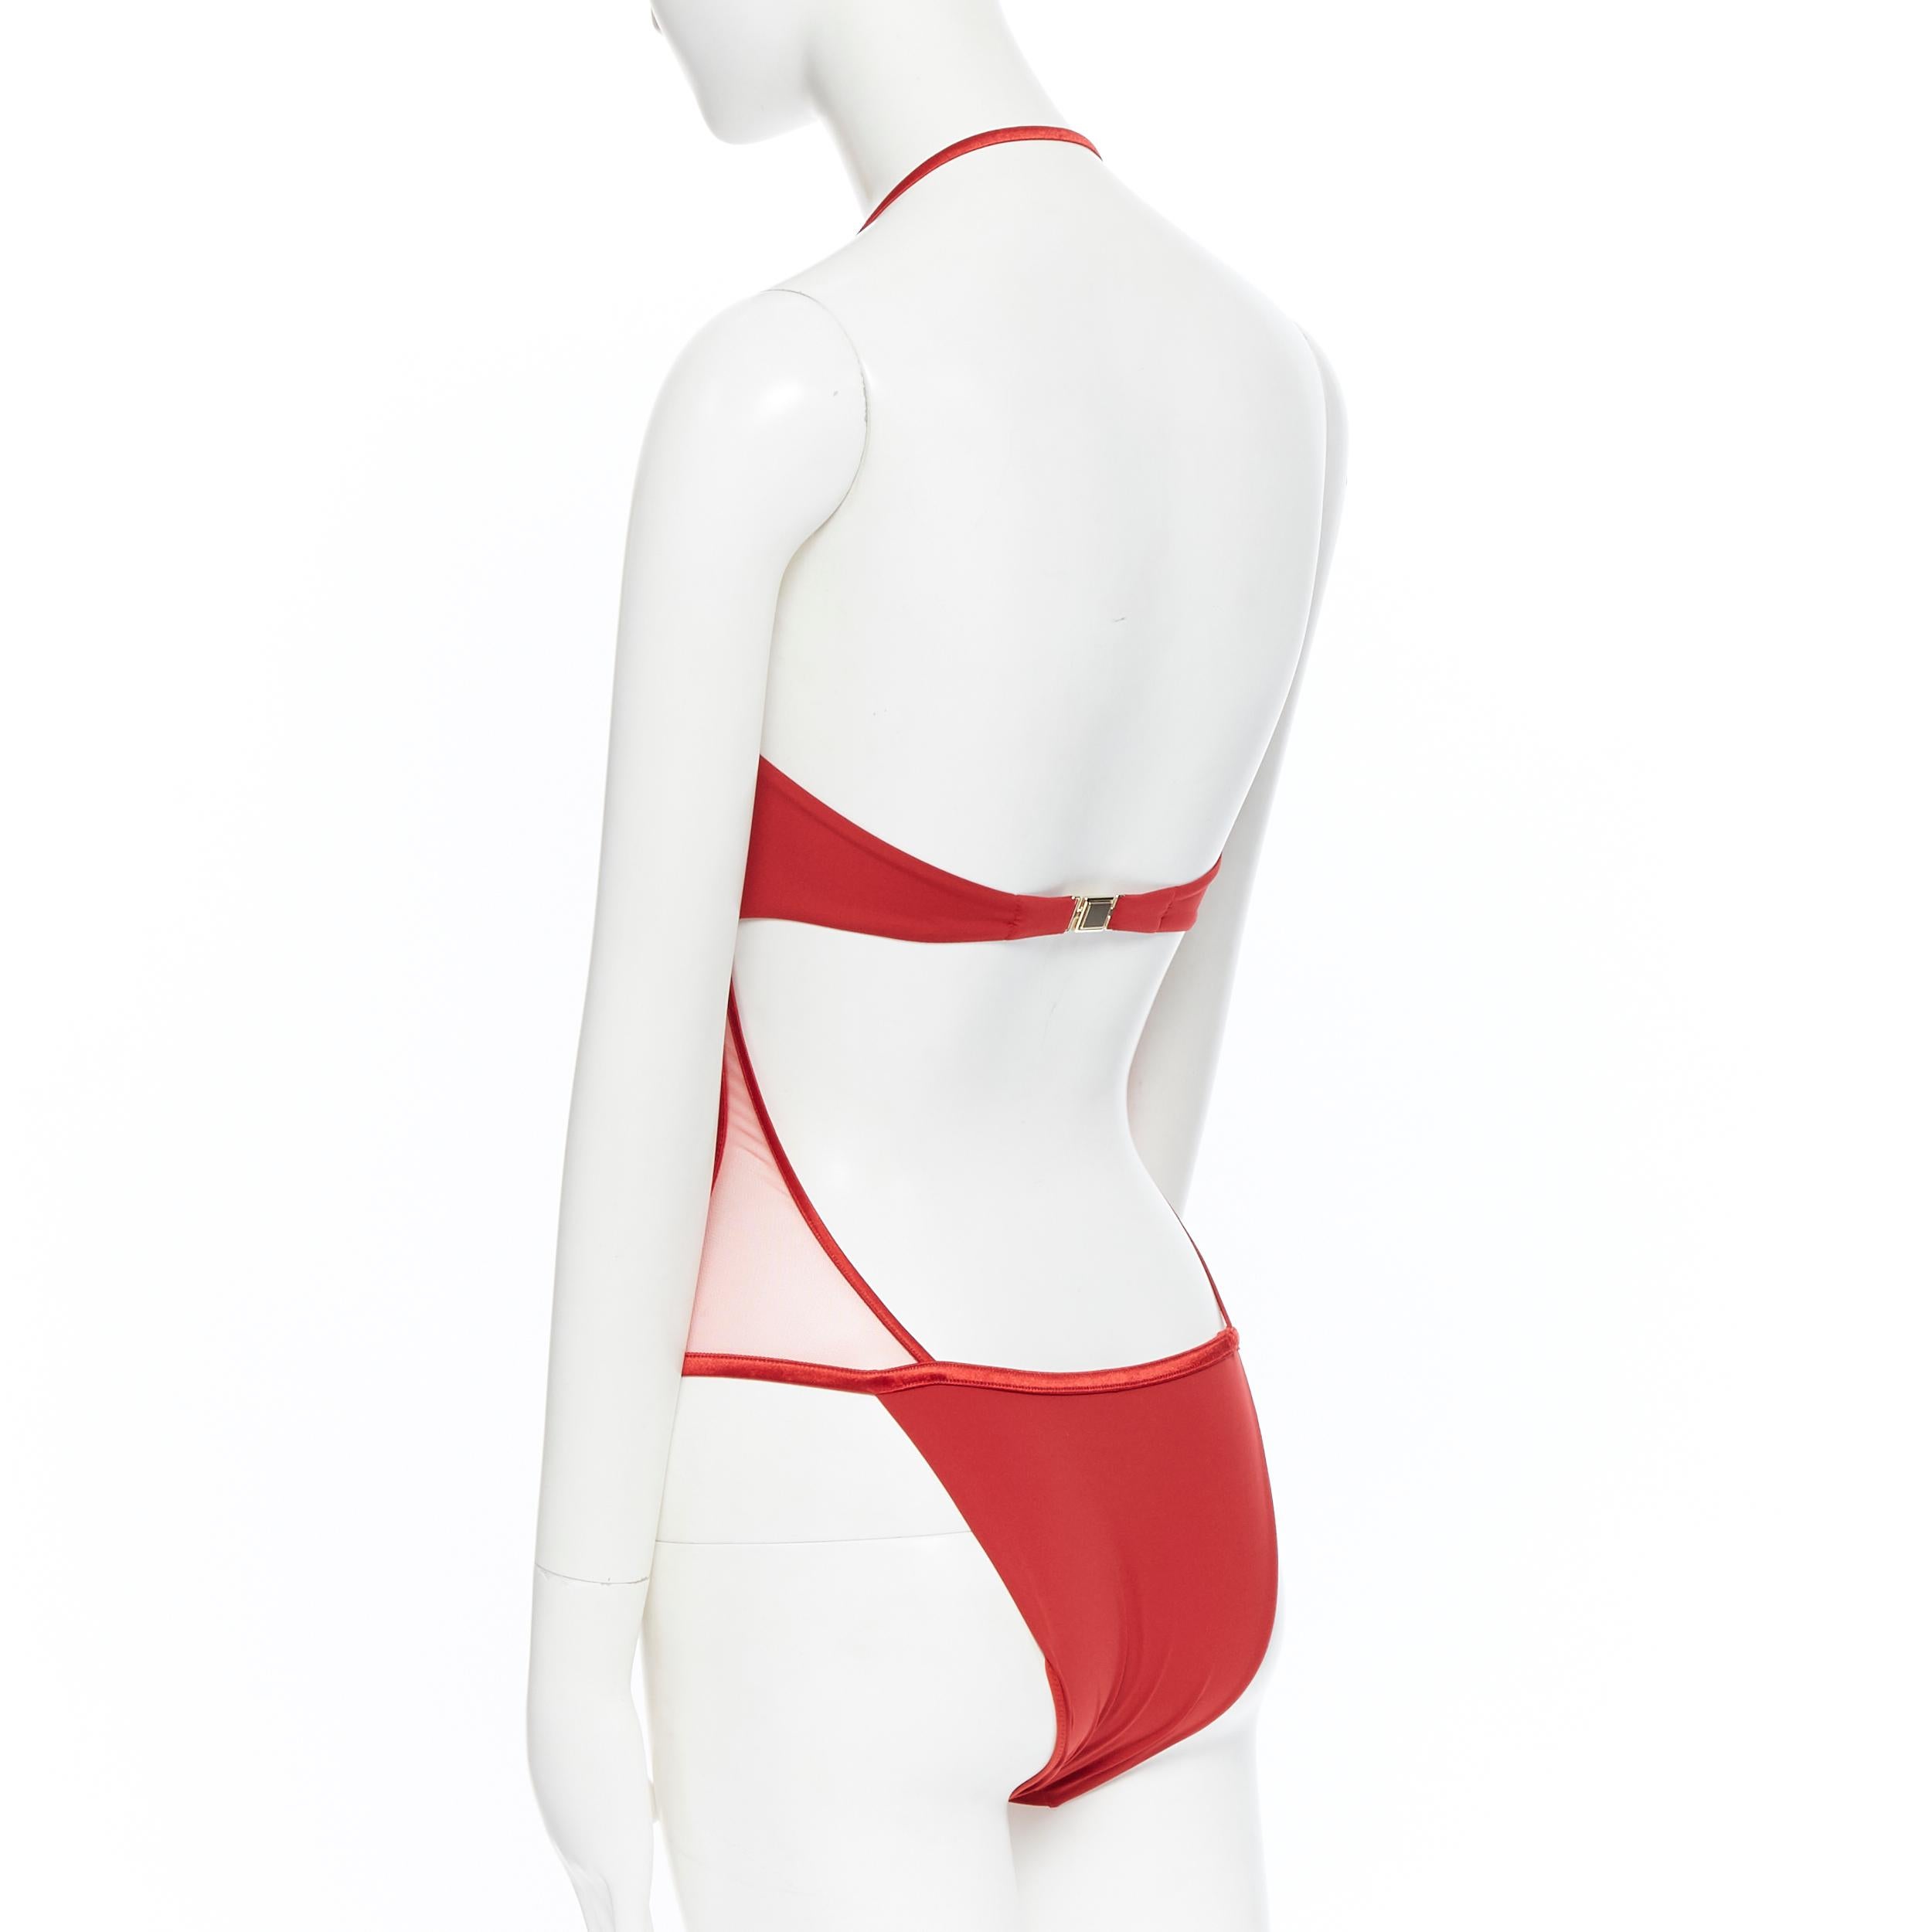 neu LA PERLA Graphique Couture rot entbeint schiere Körper Monokini Badeanzug IT42B S 2